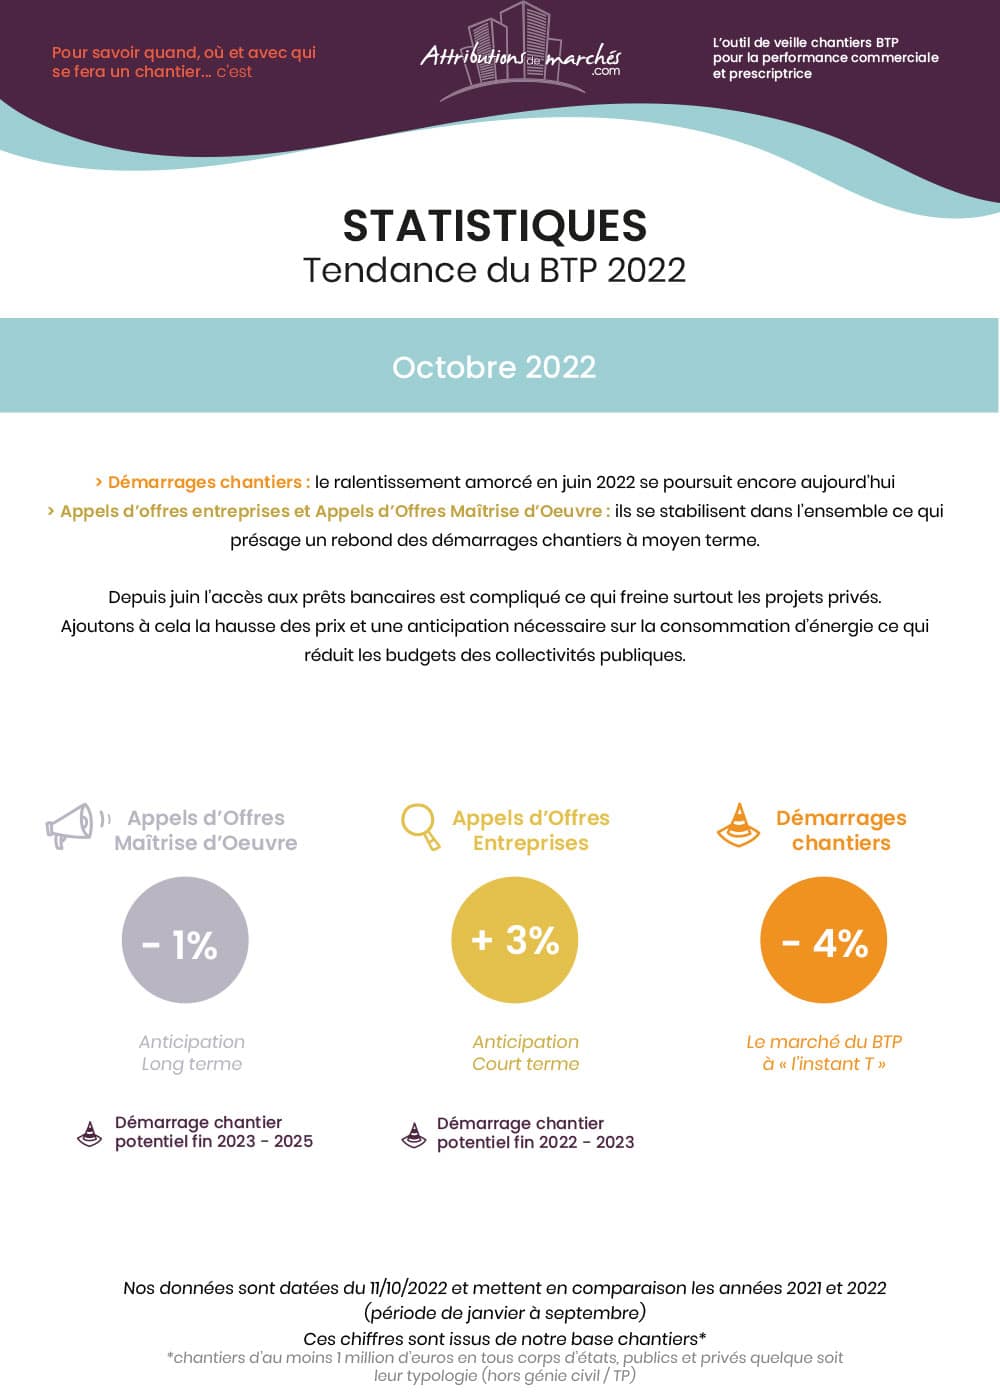 visuel-newsletter-statistiques-btp-octobre-2022